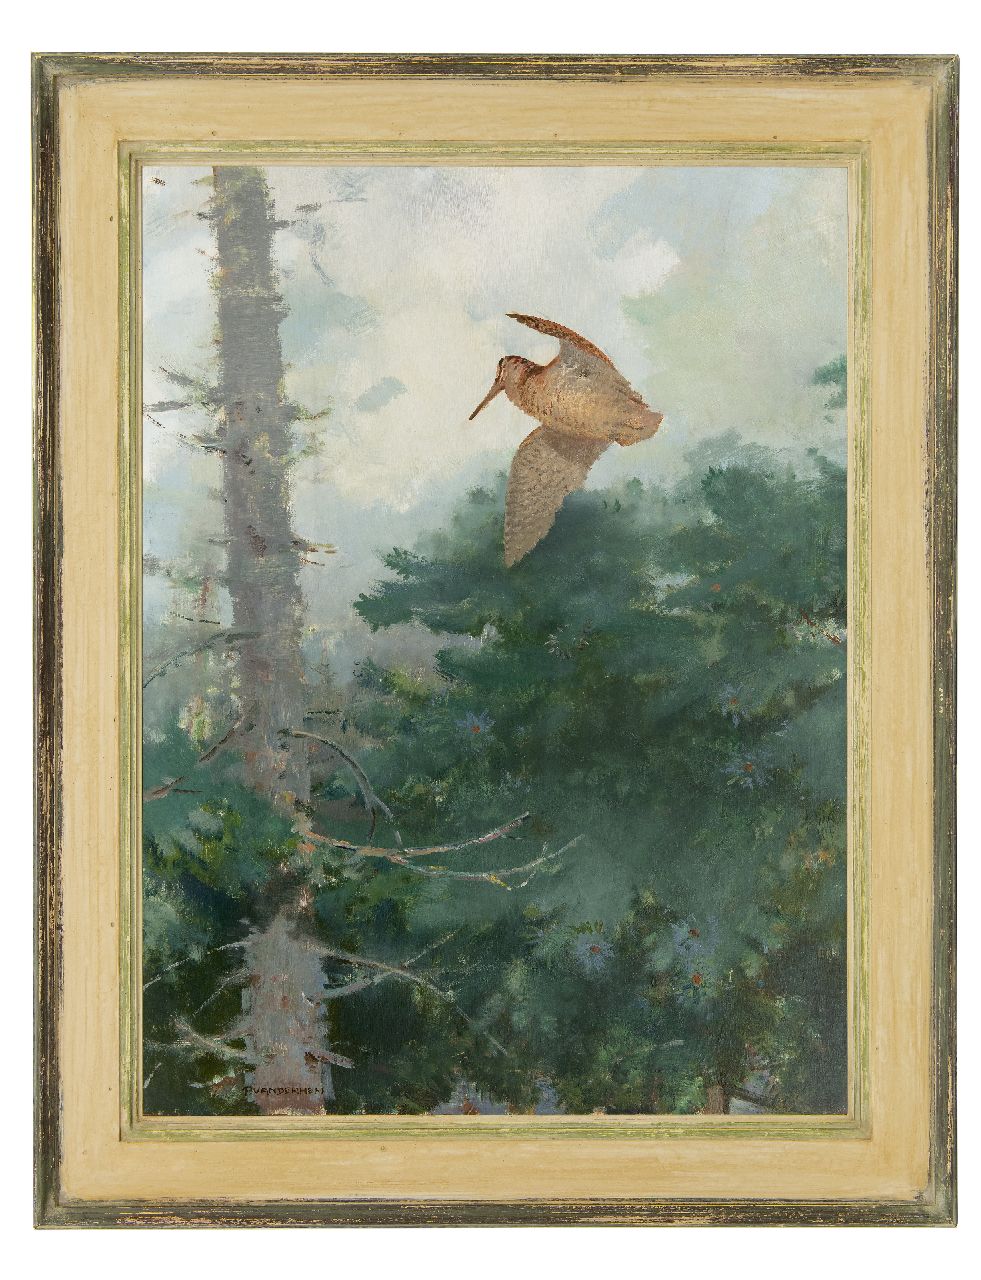 Hem P. van der | Pieter 'Piet' van der Hem, Invallende houtsnip, olieverf op board 78,5 x 59,5 cm, gesigneerd linksonder